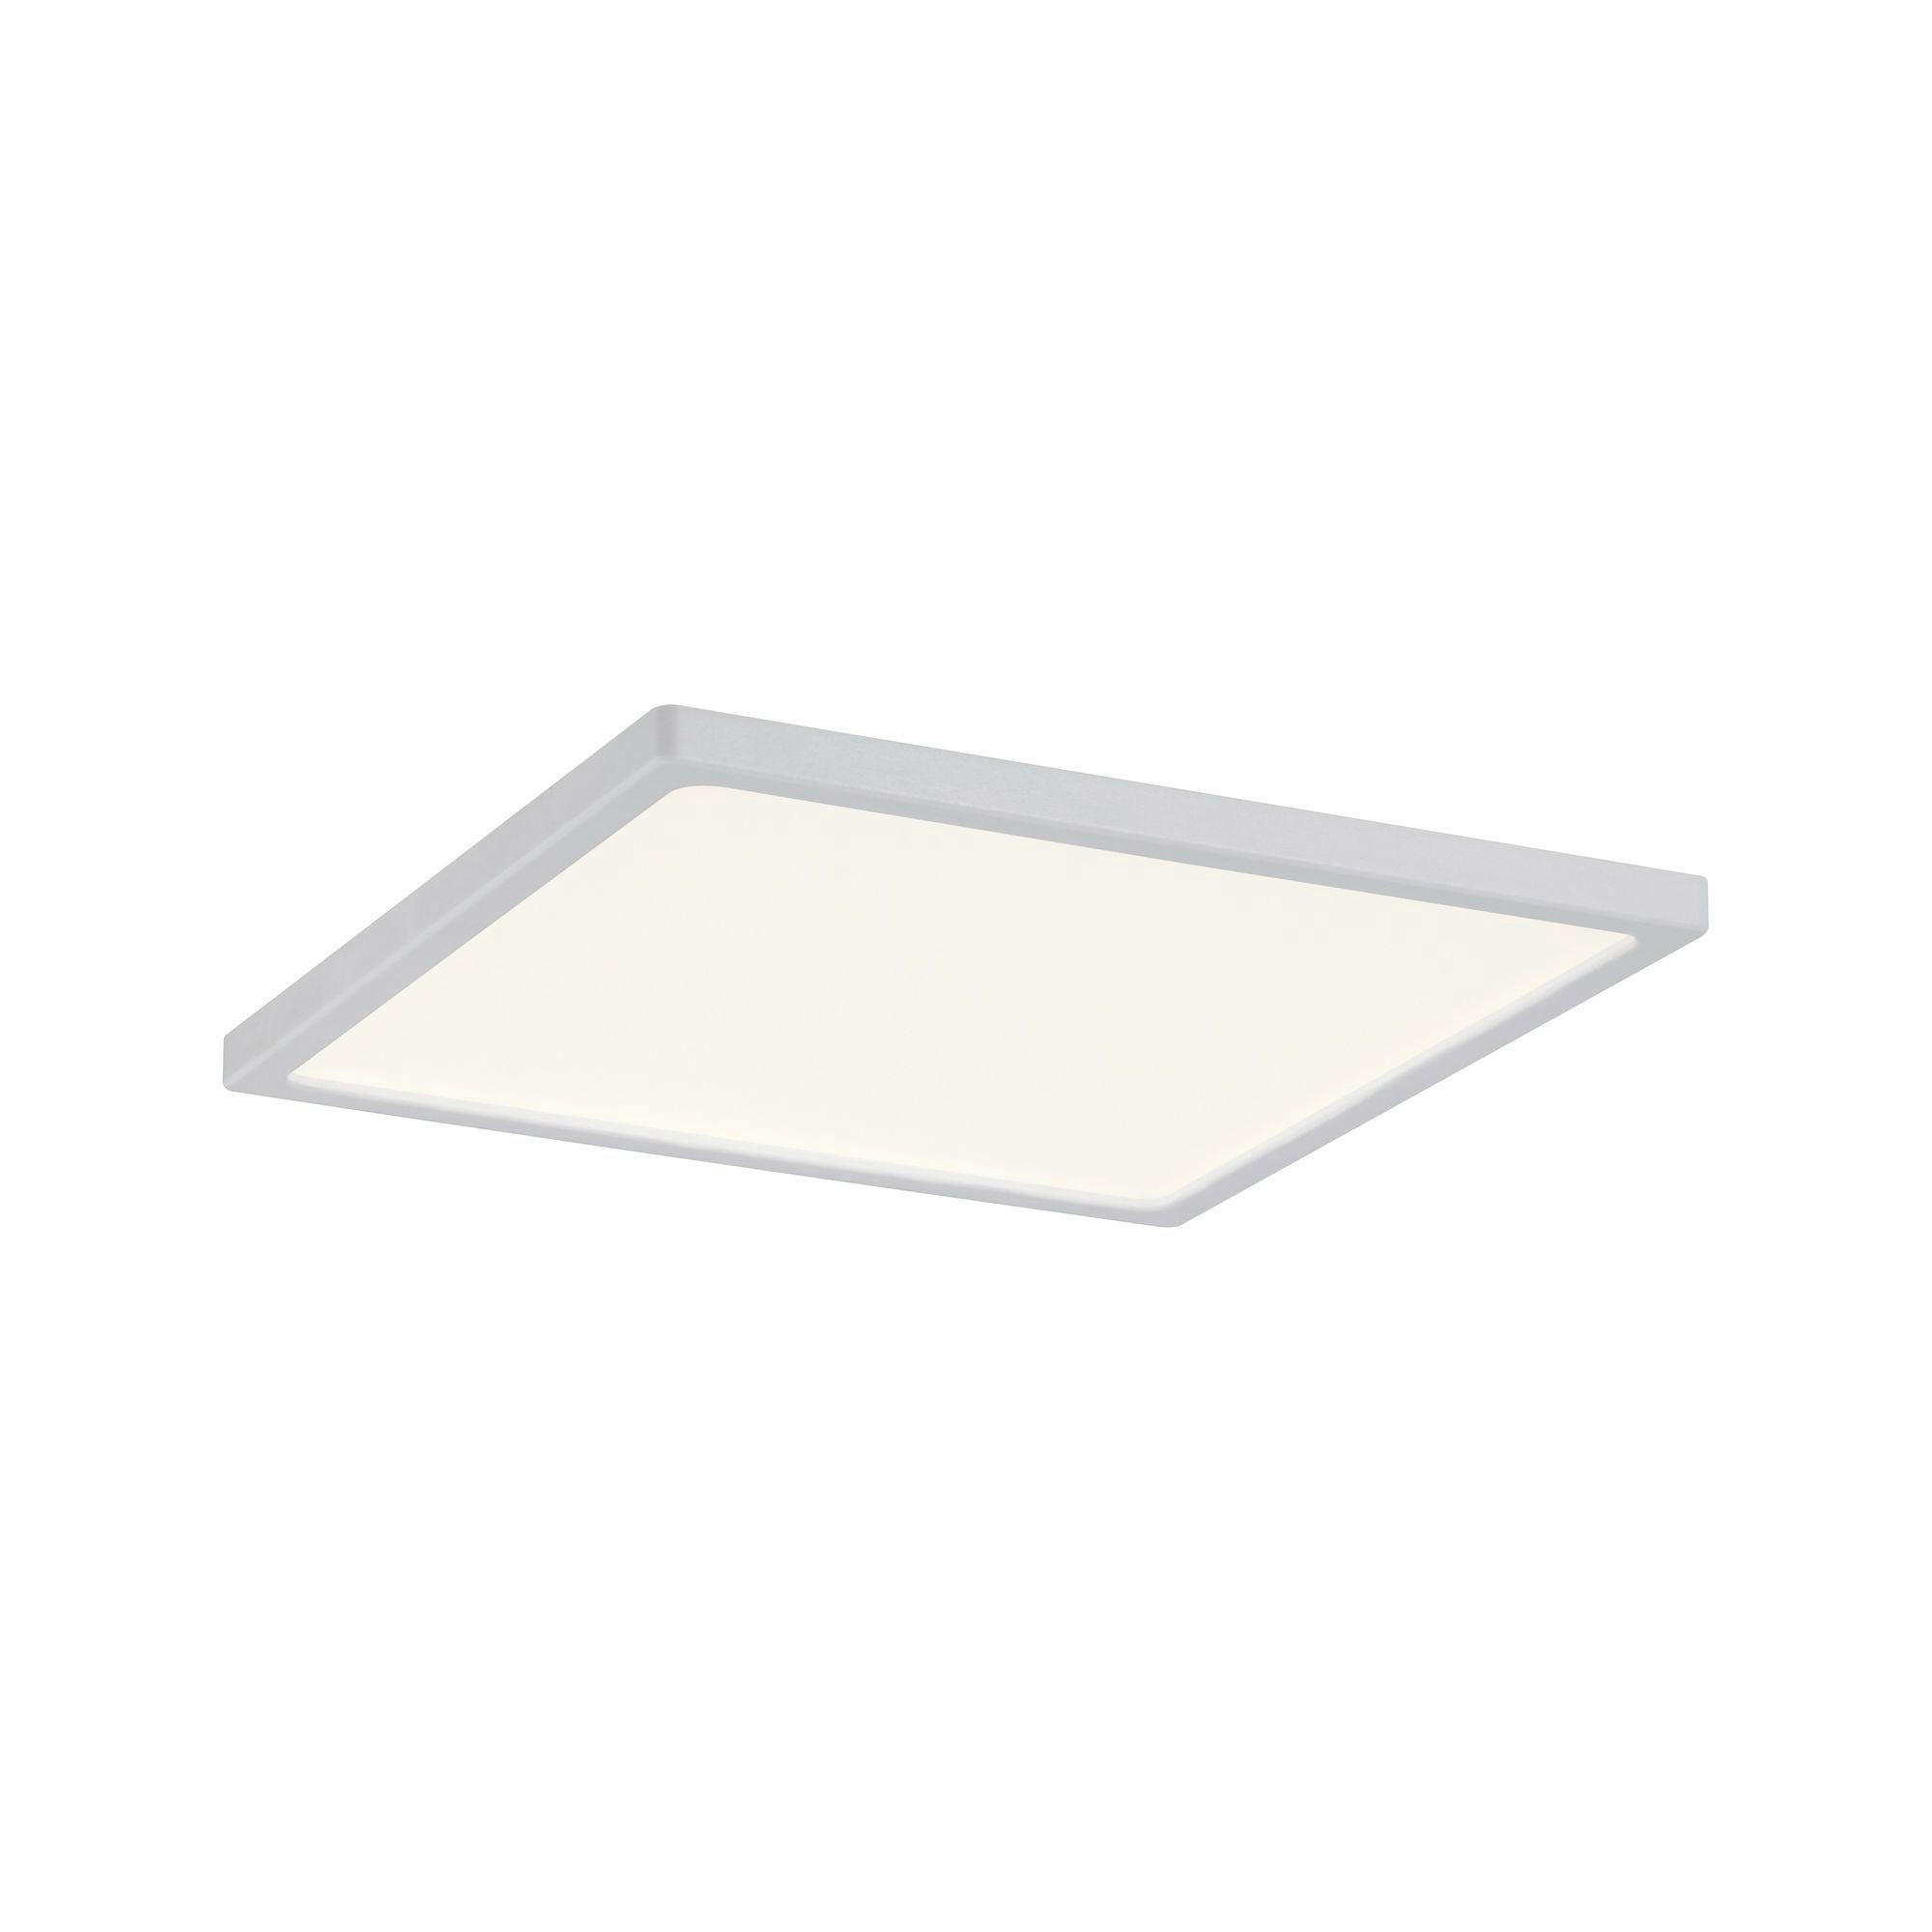 LED-PANEEL  - Weiß, Basics, Kunststoff (12/12cm) - Paulmann